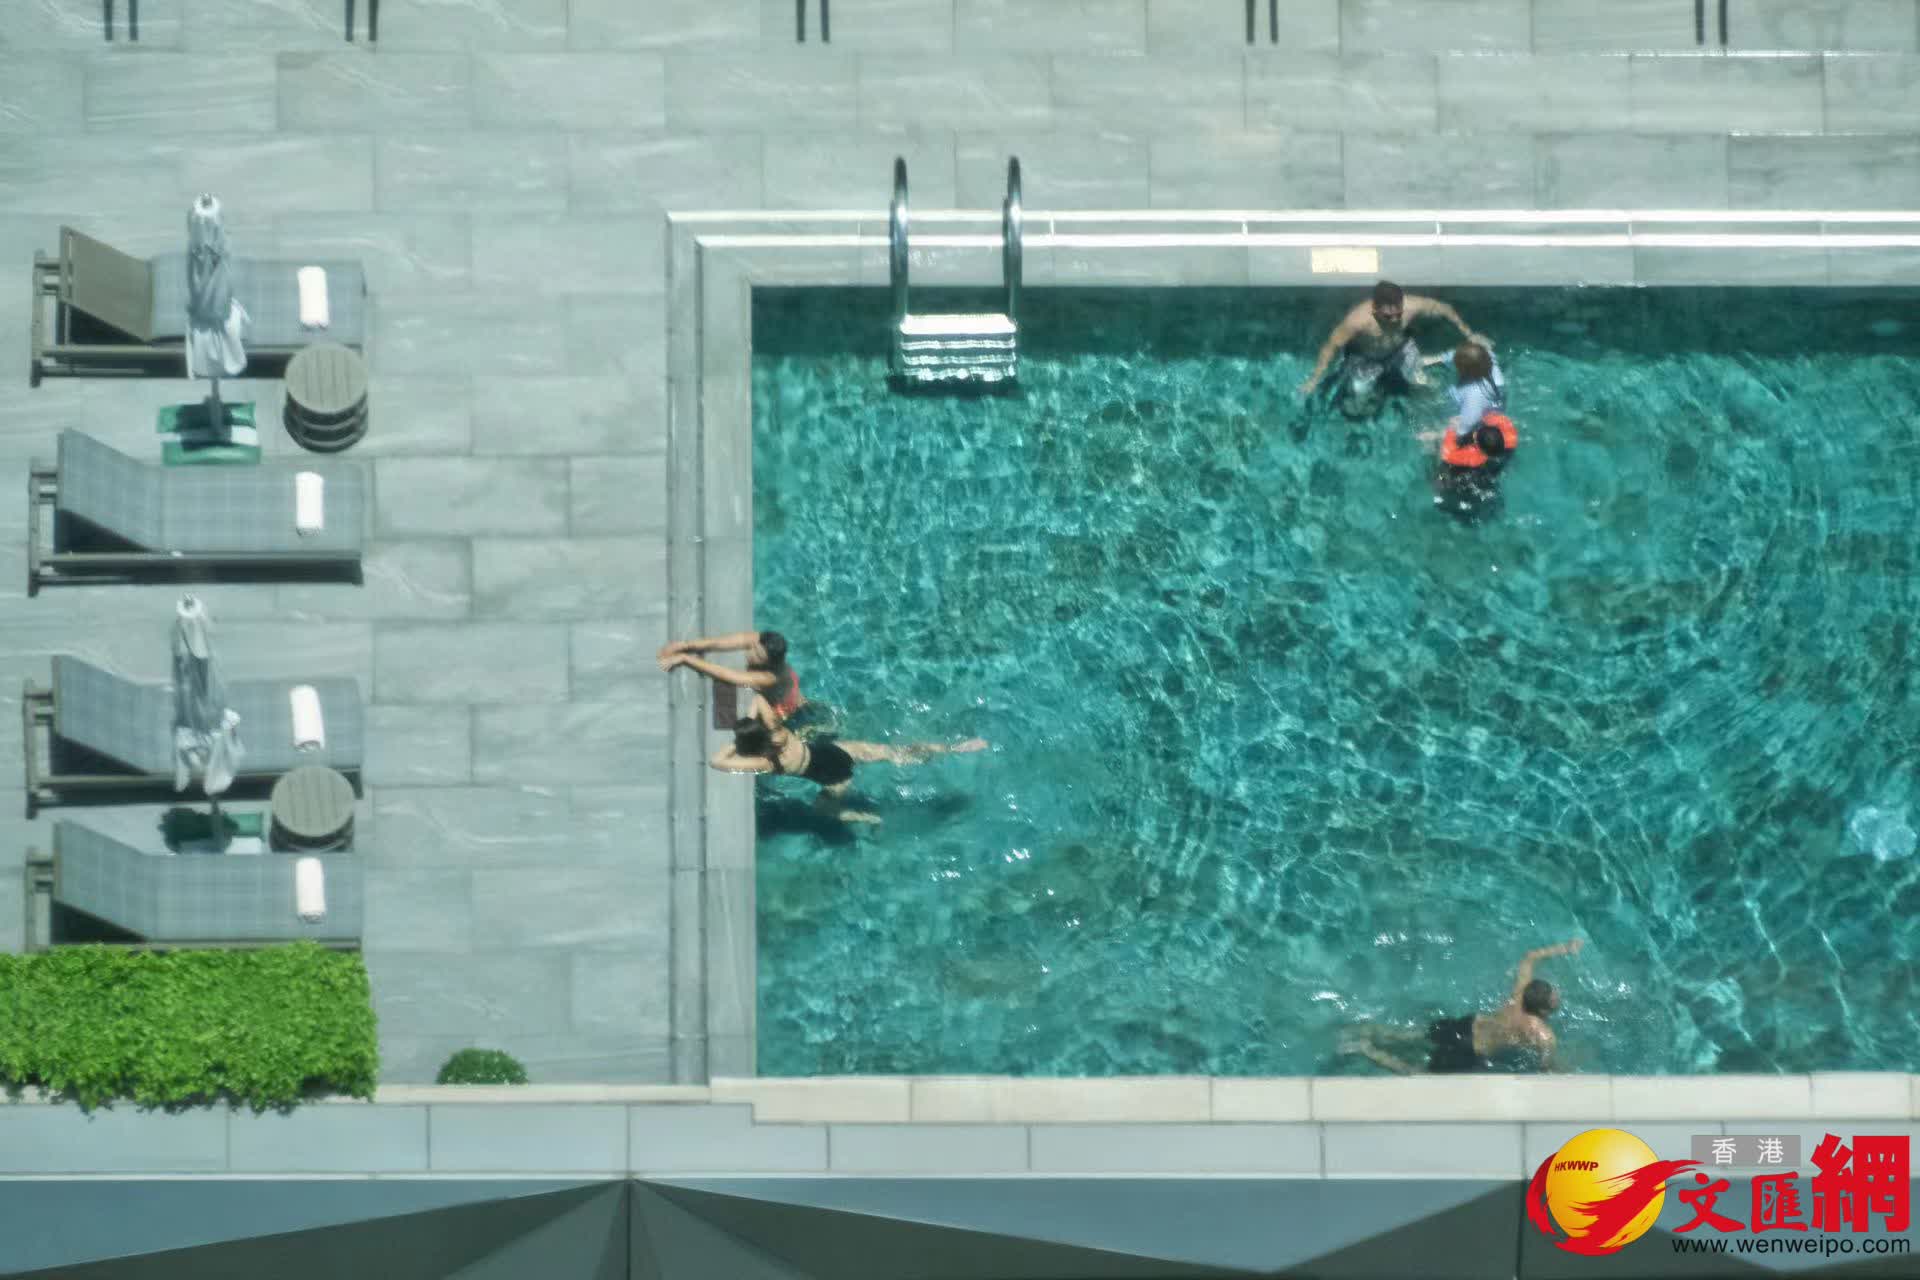 有市民通過游泳消暑。